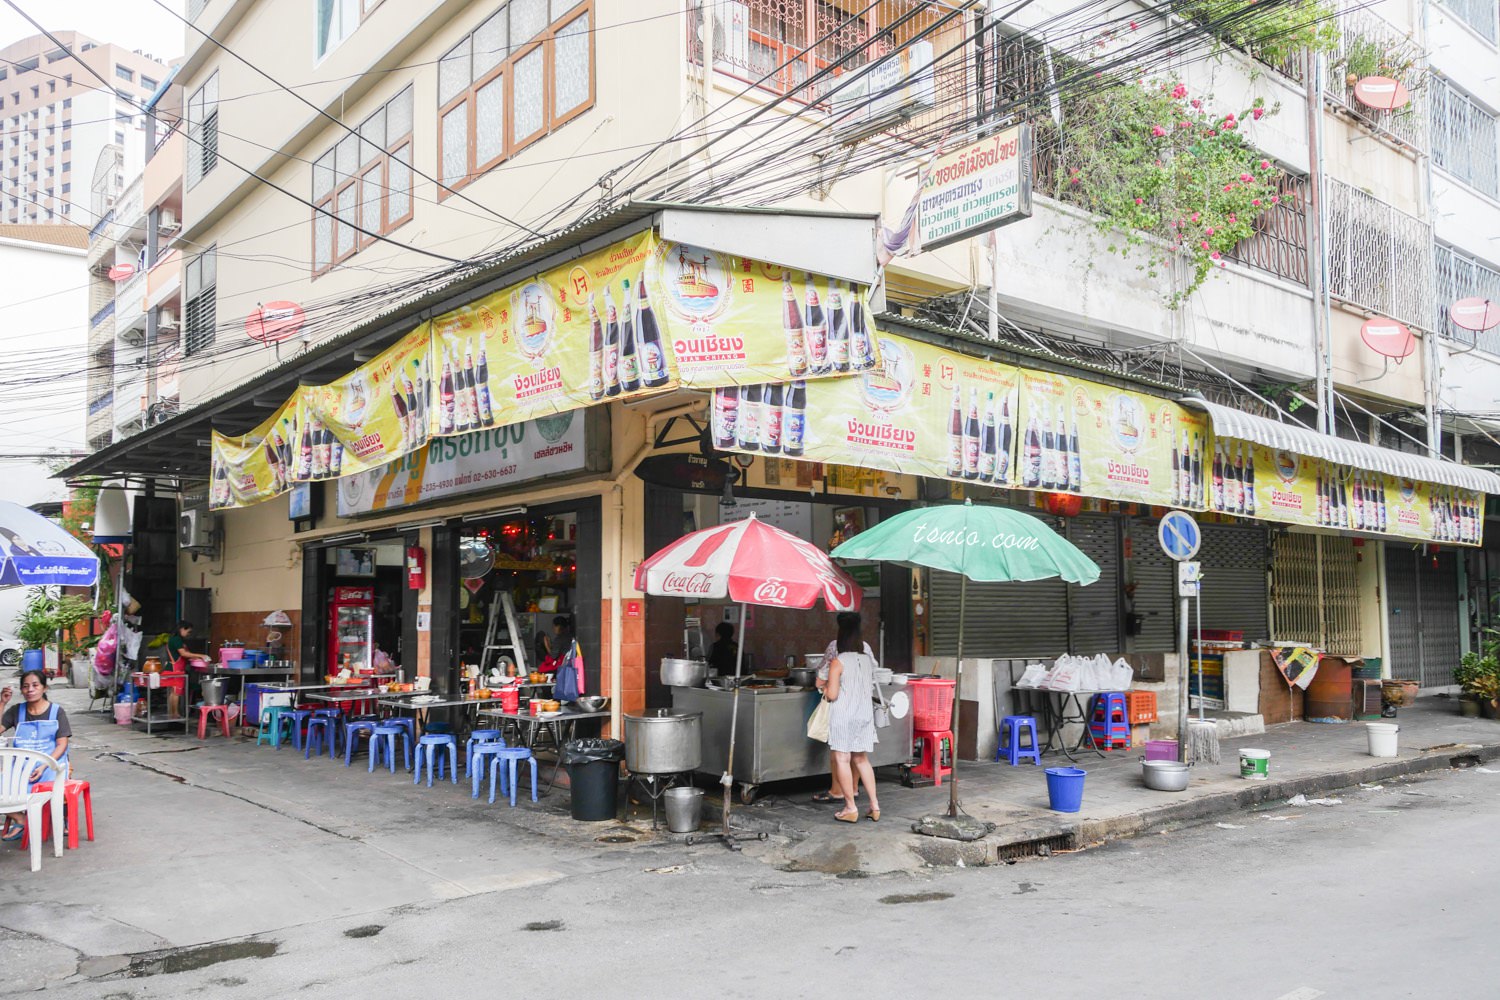 曼谷美食推薦 TROK SUNG 豬腳飯 道地平價泰國小吃